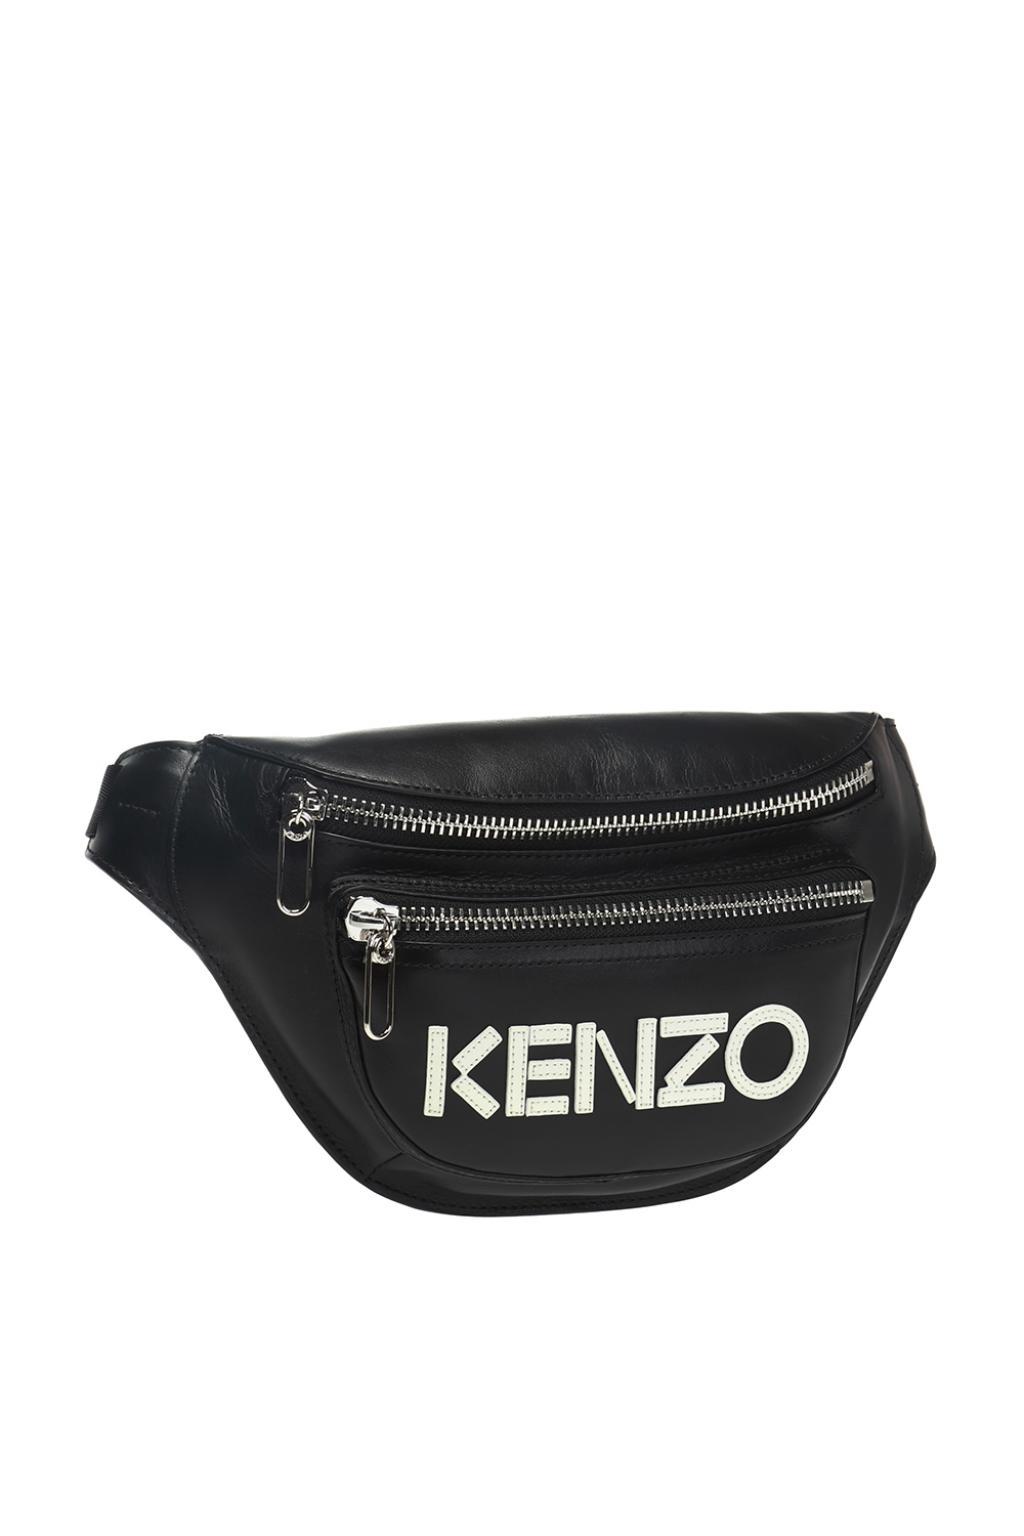 KENZO Logo Belt Bag in Black for Men - Lyst